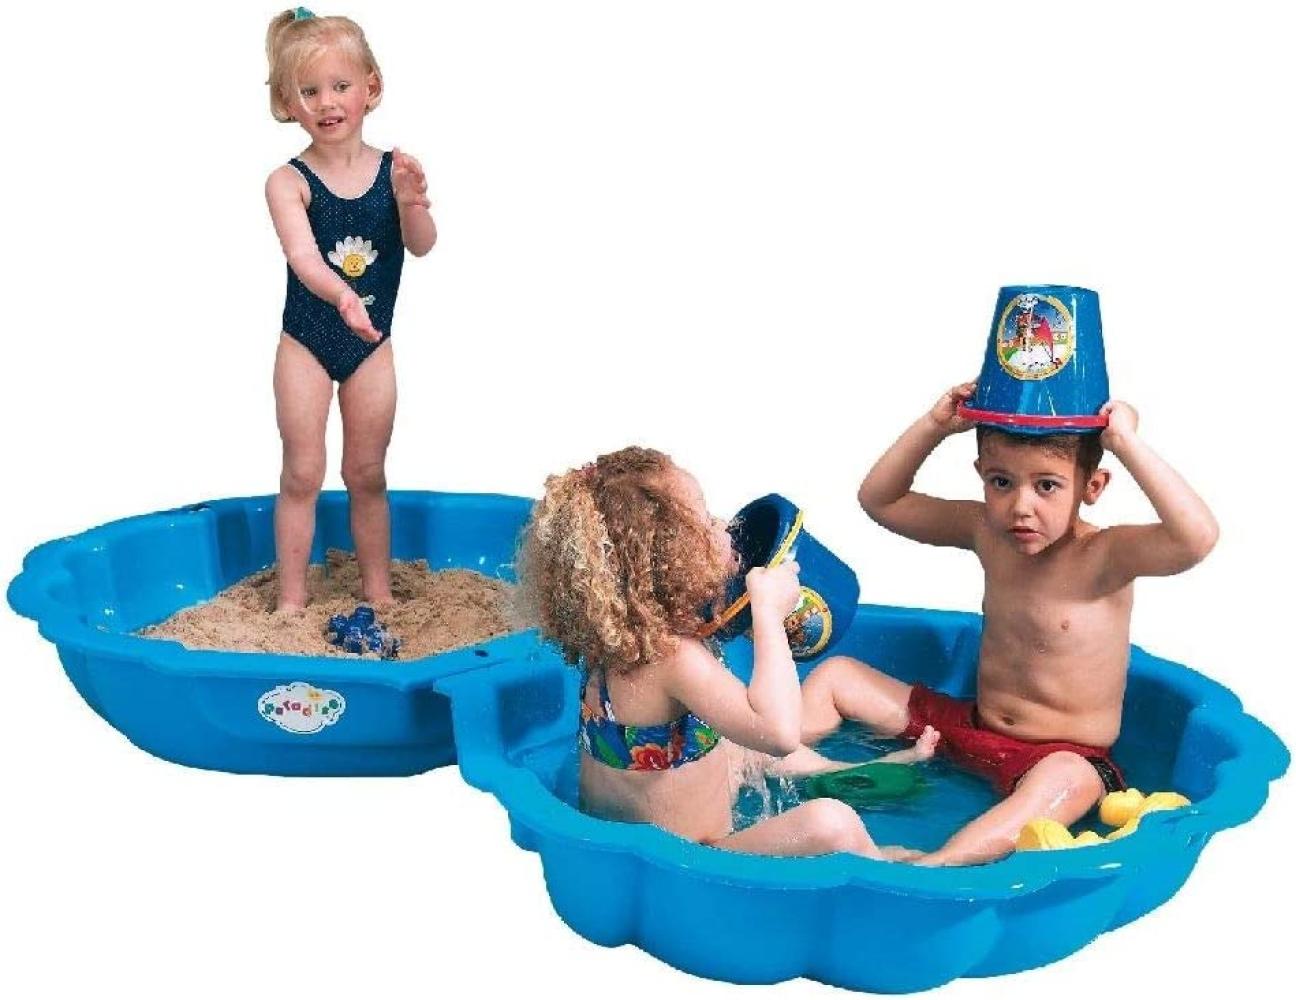 Paradiso Toys 'Sandmuschel' Sandkiste / Sandkastenschalen, 102 x 88 x 20 cm, ab 1,5 Jahren, 2-teilig, blau Bild 1